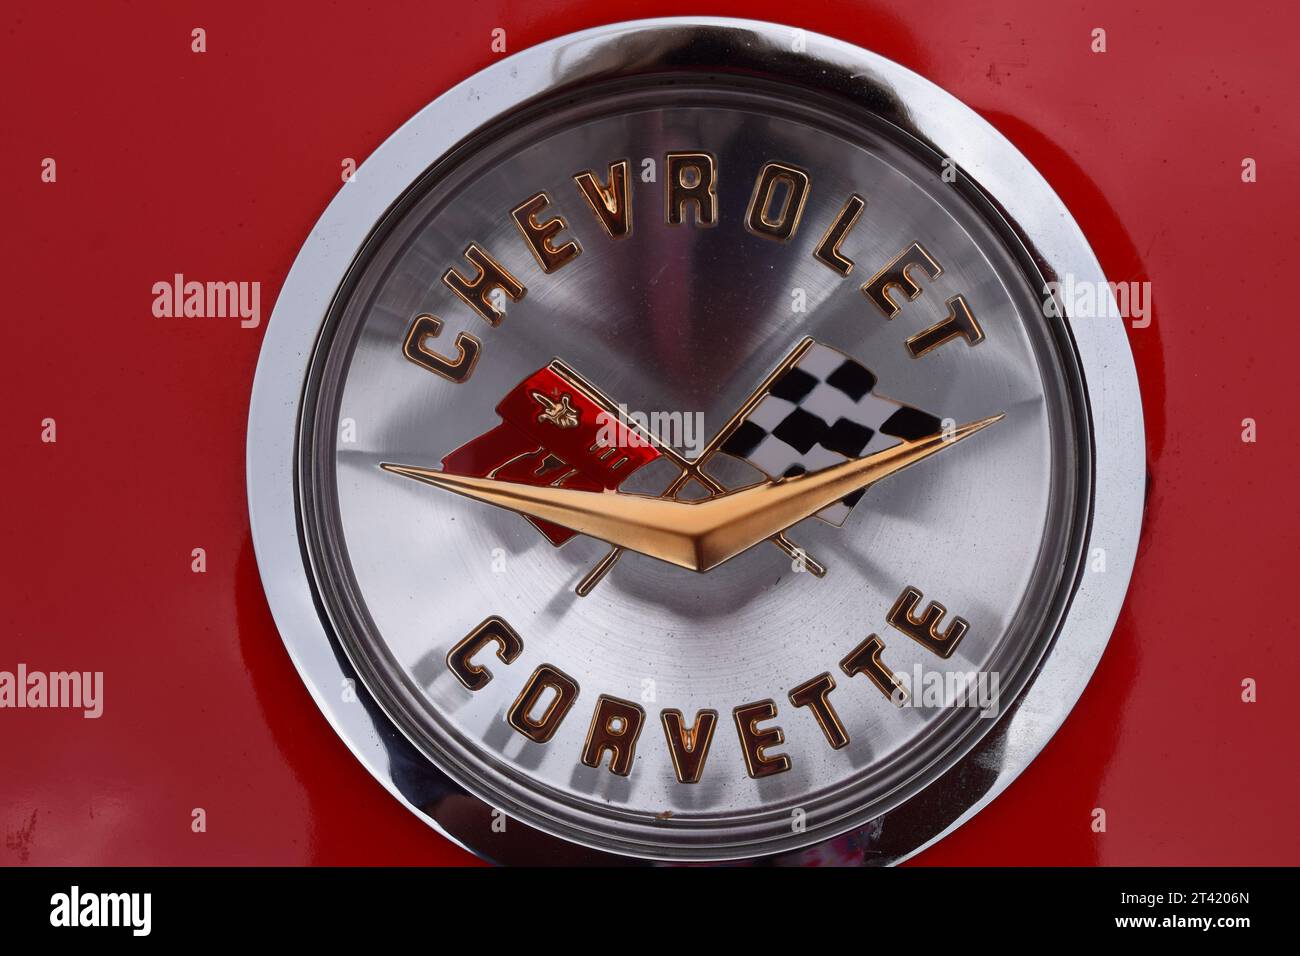 Immagine di un emblema di un'auto con l'iconico logo rosso Chevrolet Corvette 1960, esposto con orgoglio sulla parte anteriore del veicolo Foto Stock